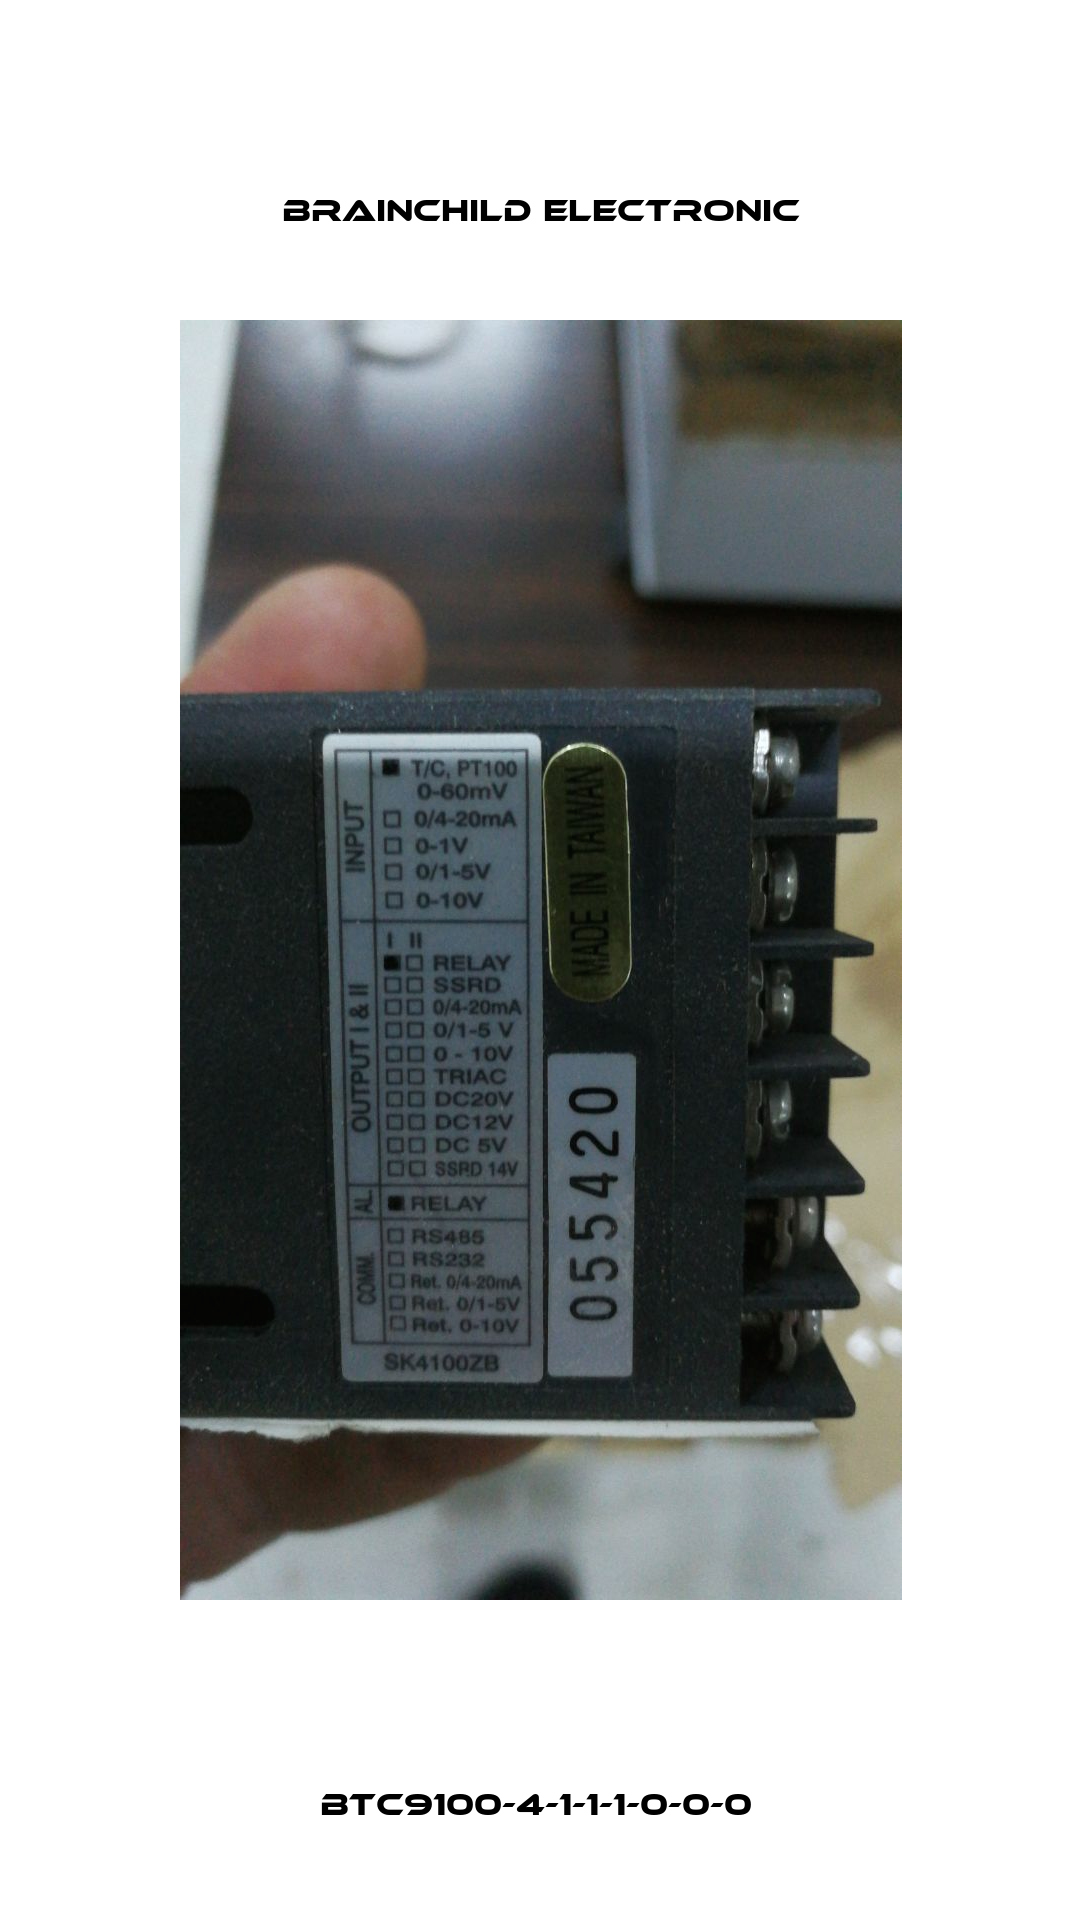 BTC9100-4-1-1-1-0-0-0  Brainchild Electronic